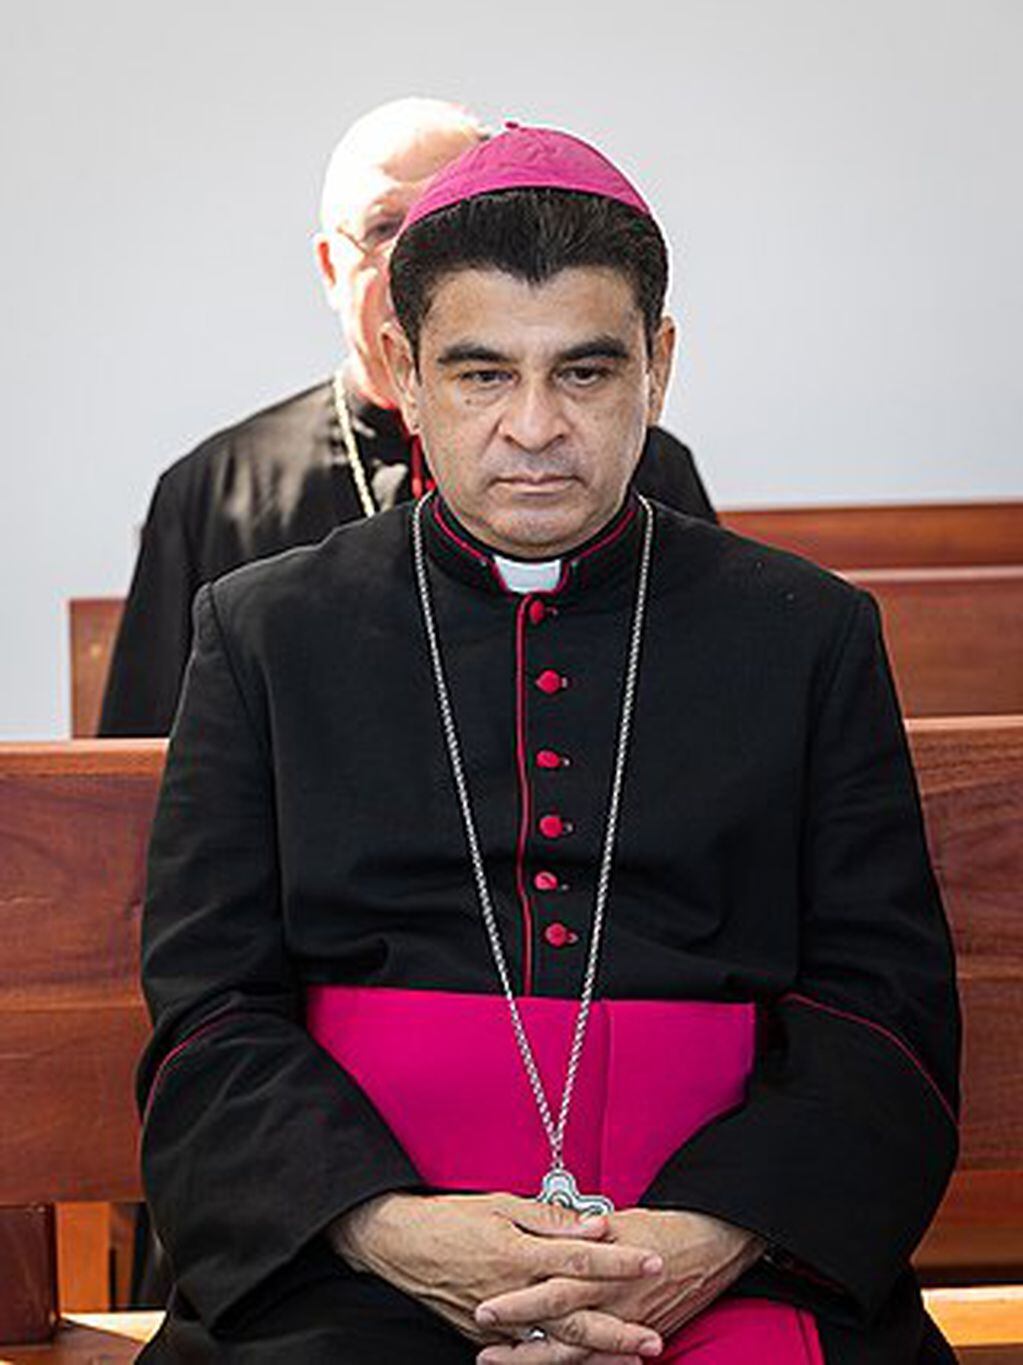 Rolando Álvarez, el obispo nicaragüense condenado a 26 años de prisión. Foto: Web.